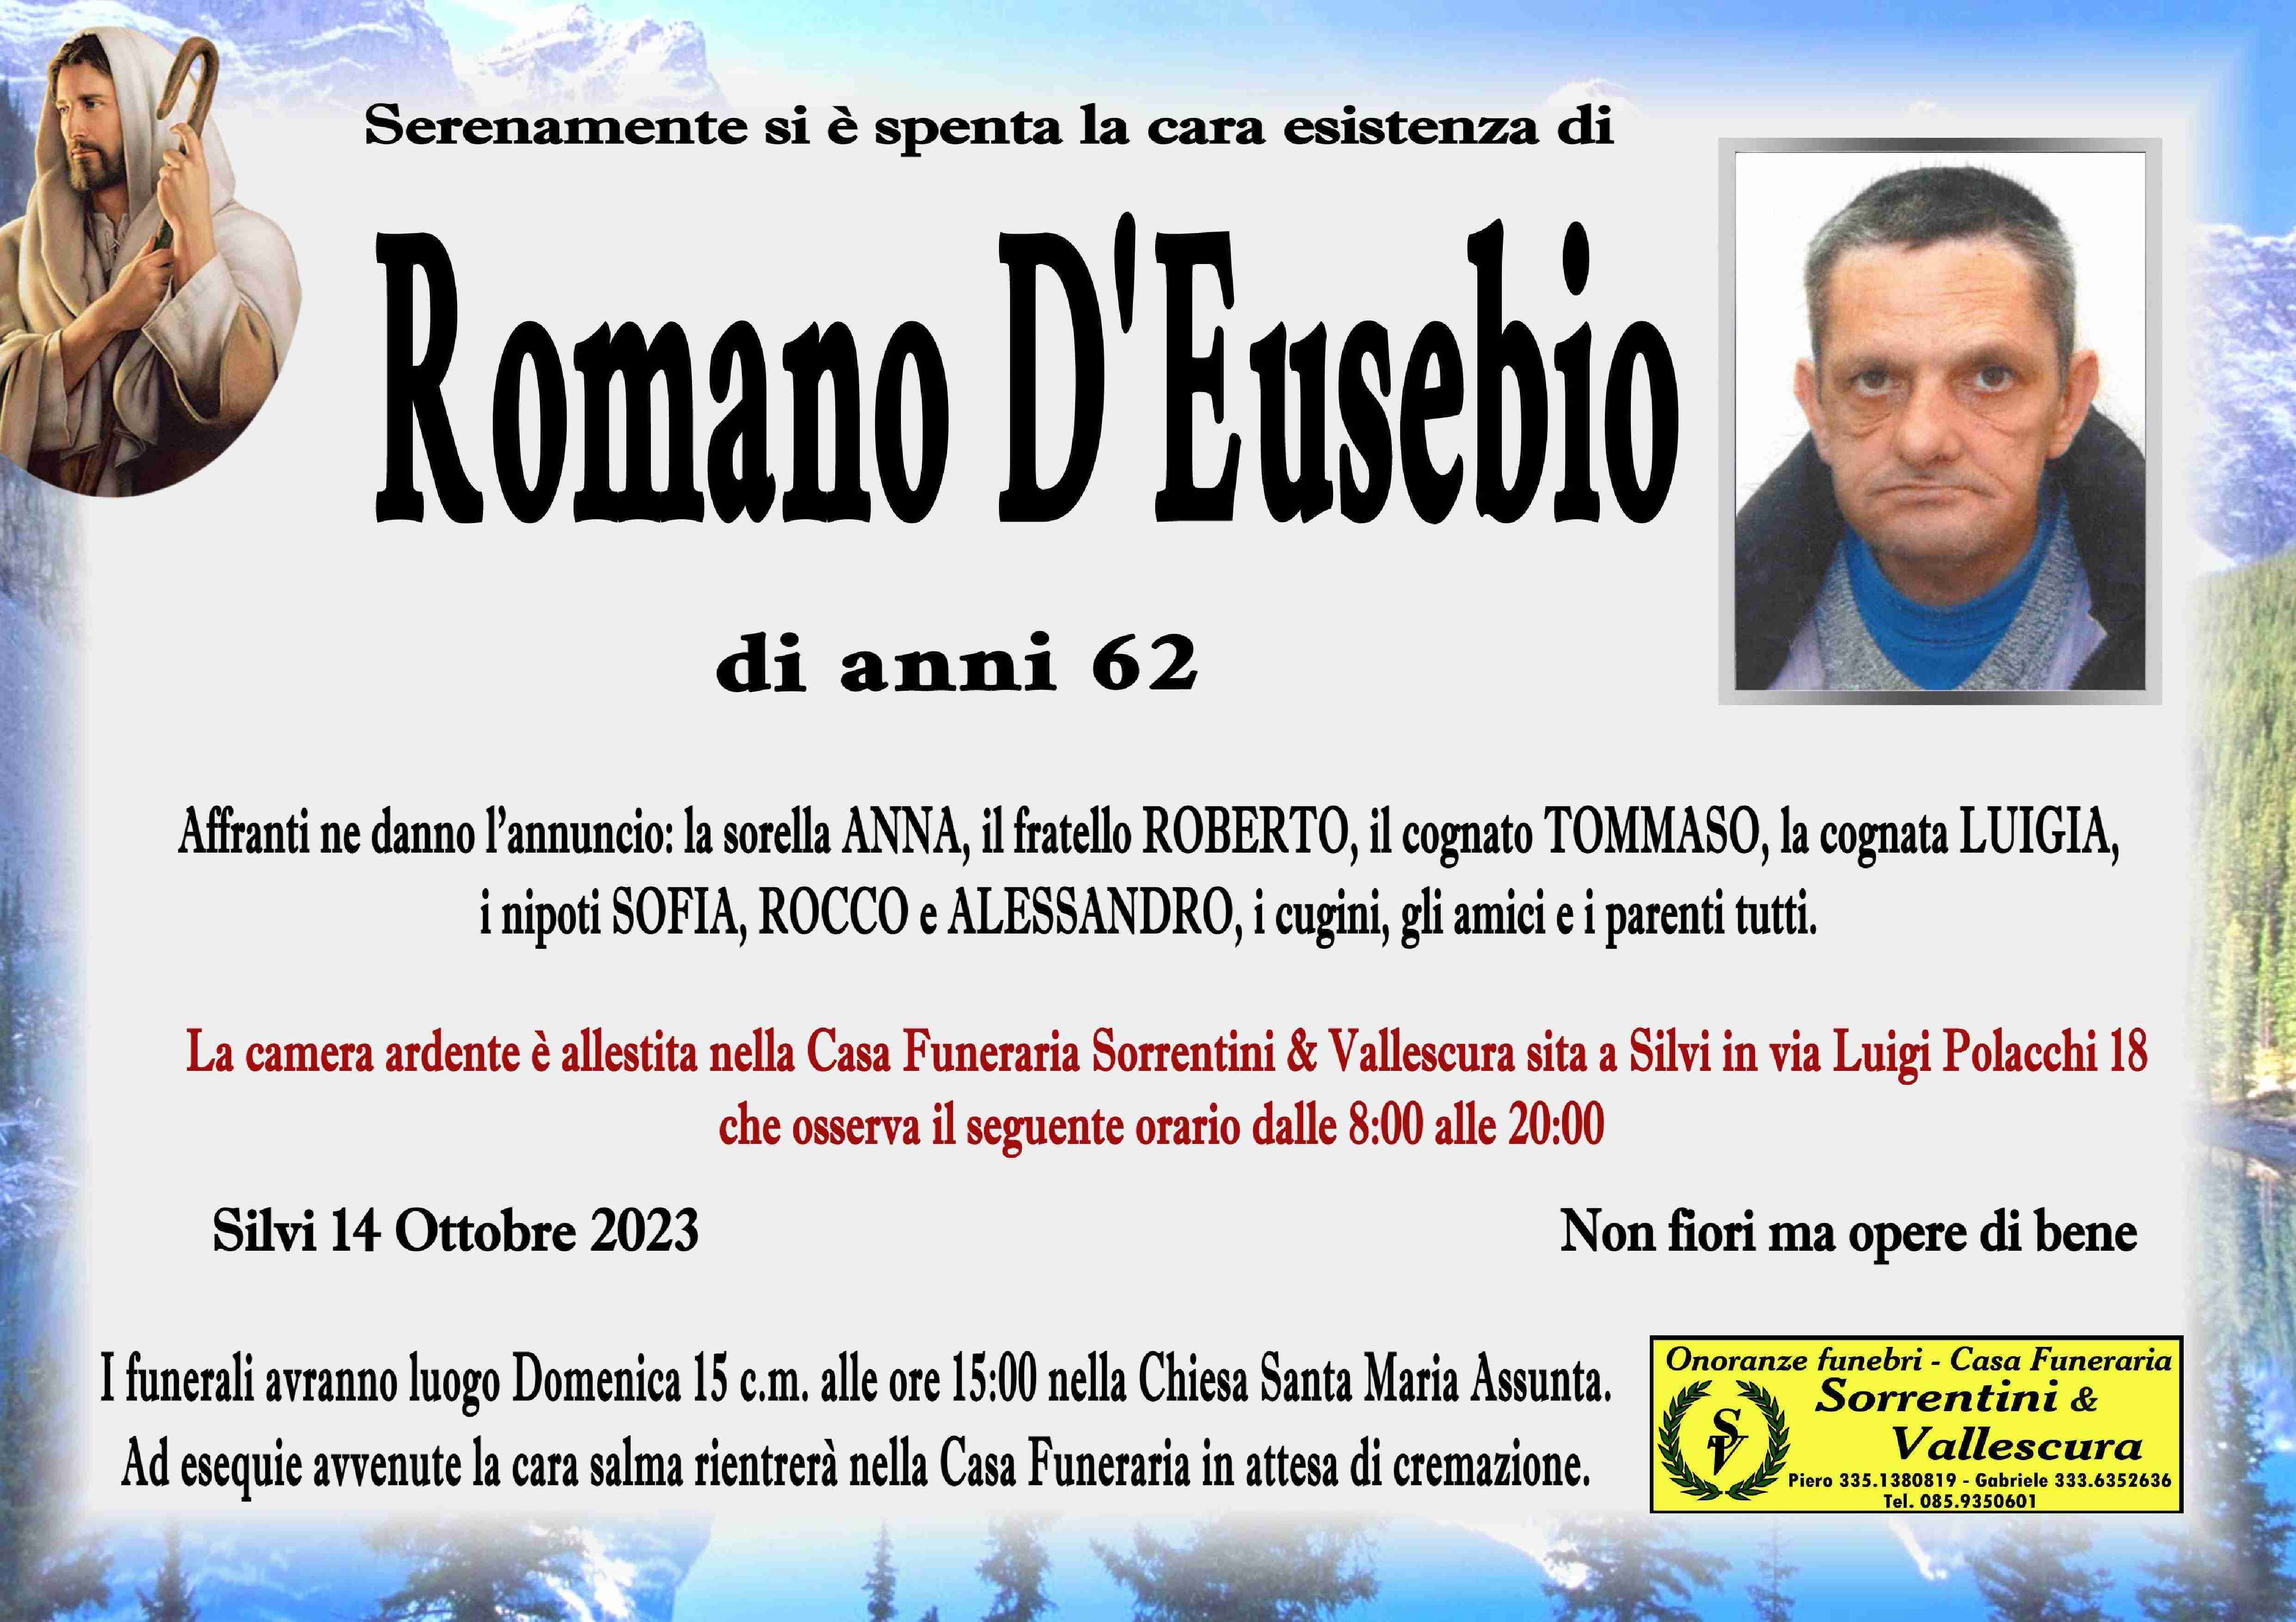 Romano D'Eusebio